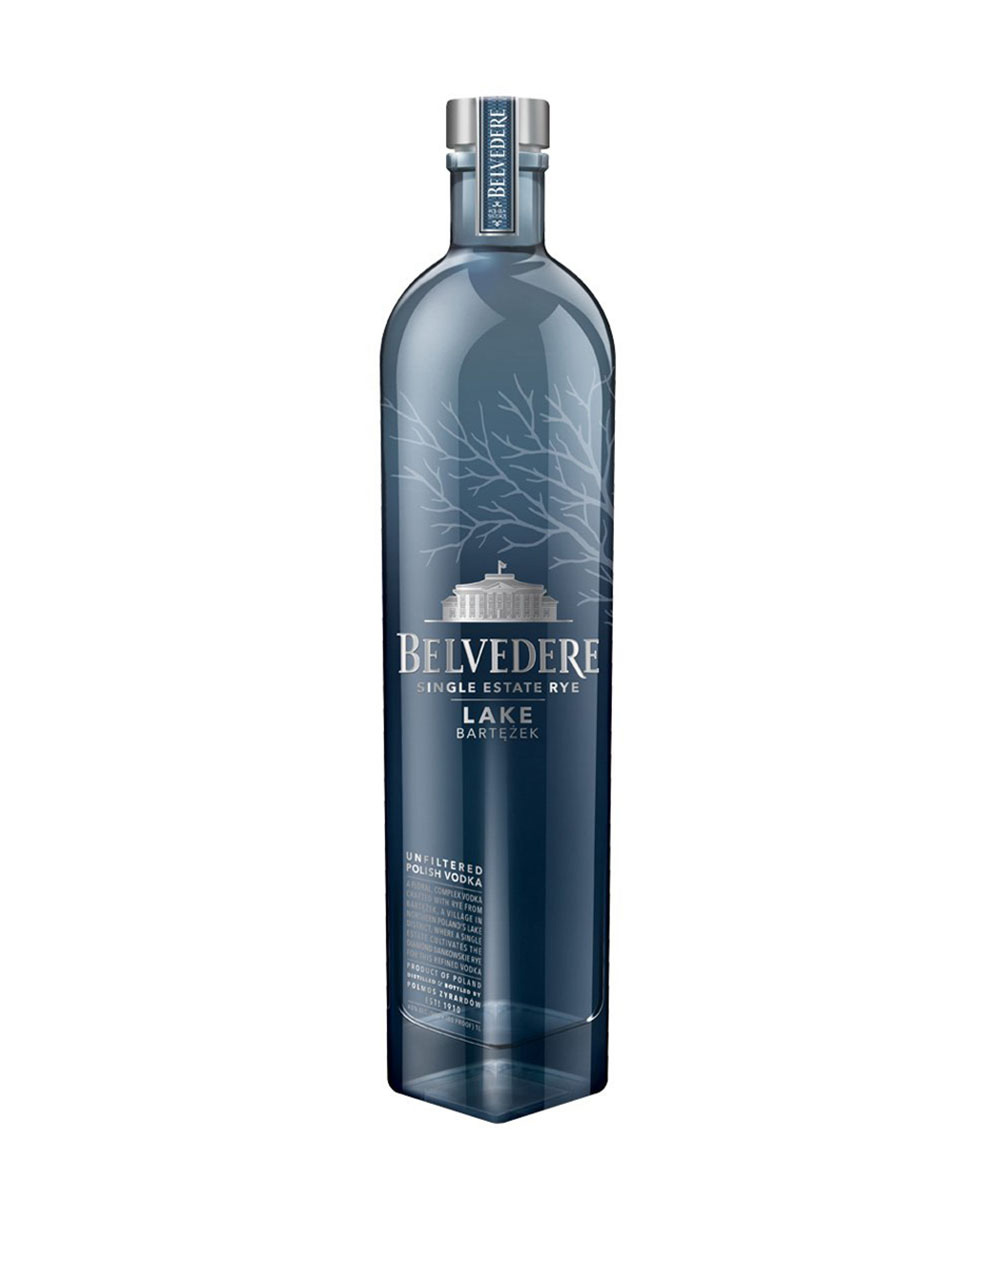 Belvedere Single Estate Rye Lake Bartezek Plain Vodka 1L